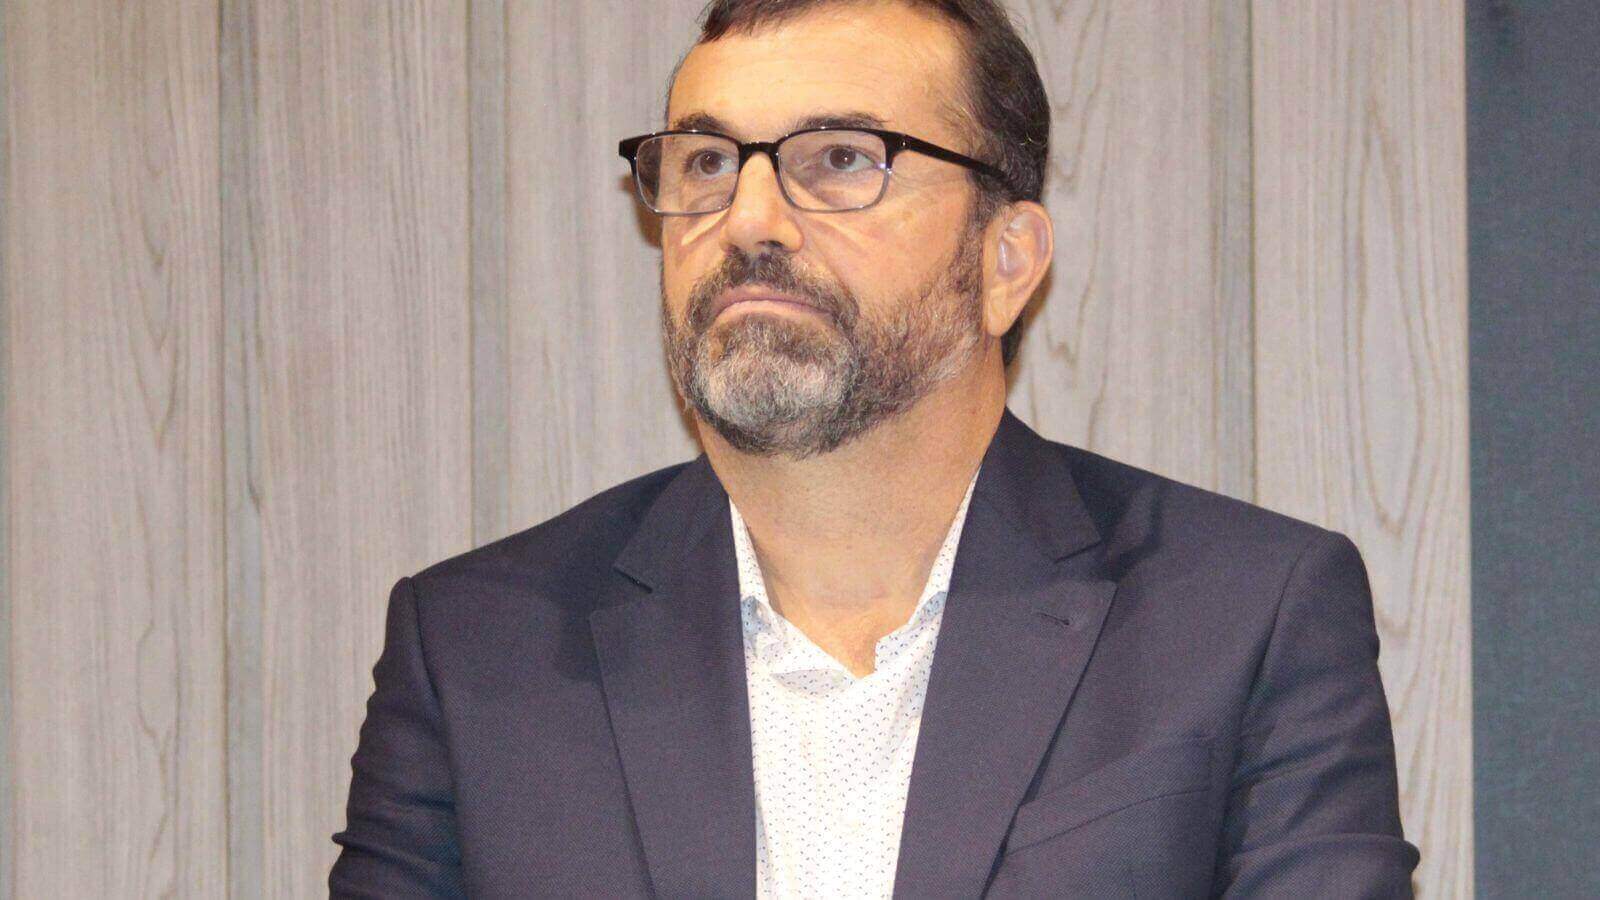 Marcelo Cereser, diretor do CIESP Jundiaí, durante evento oficial, vestindo um terno escuro e camisa clara, expressando seriedade.